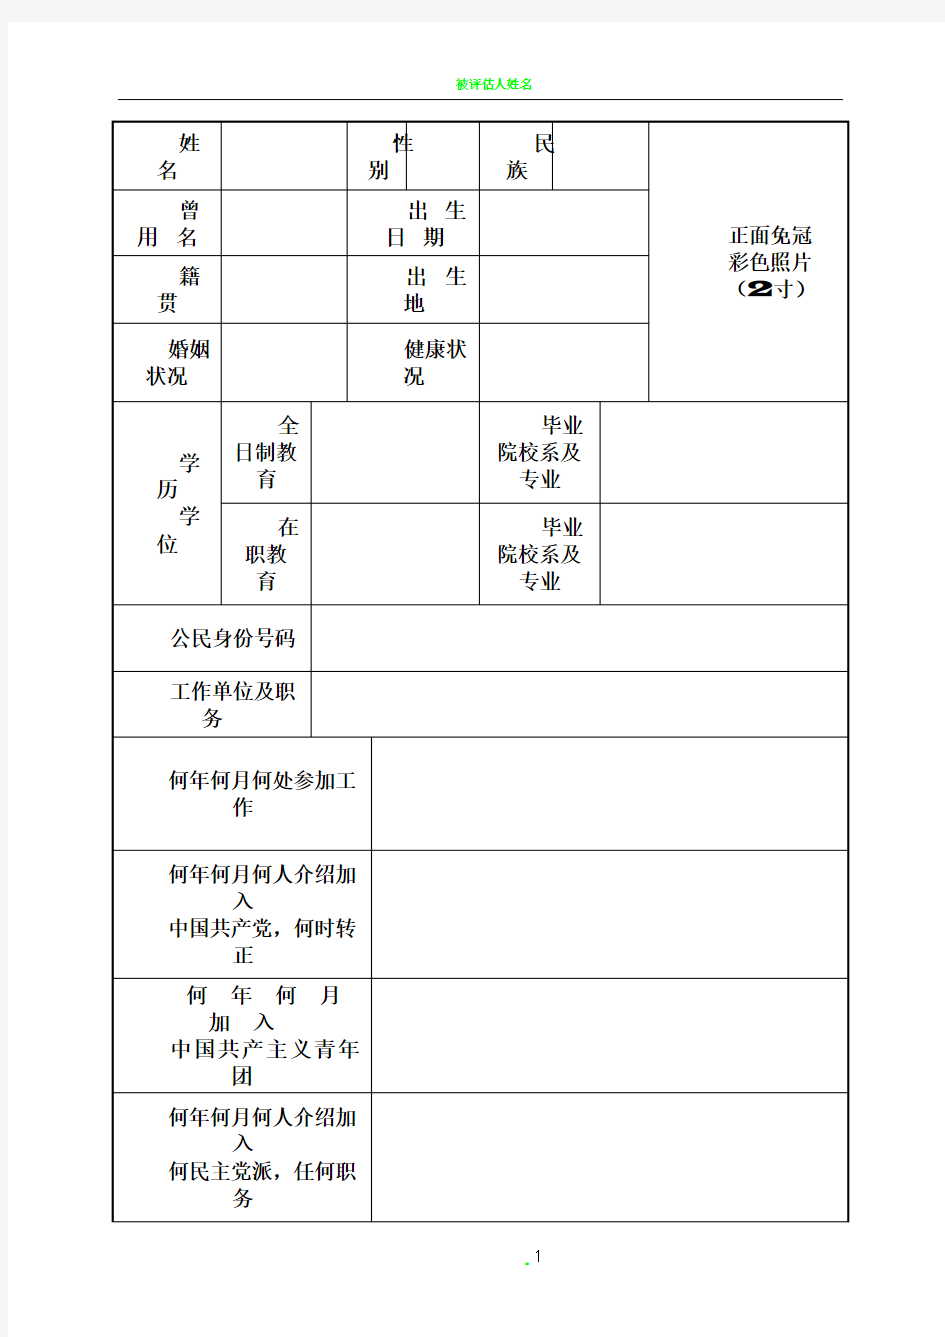 2015年版干部履历表(最新版)